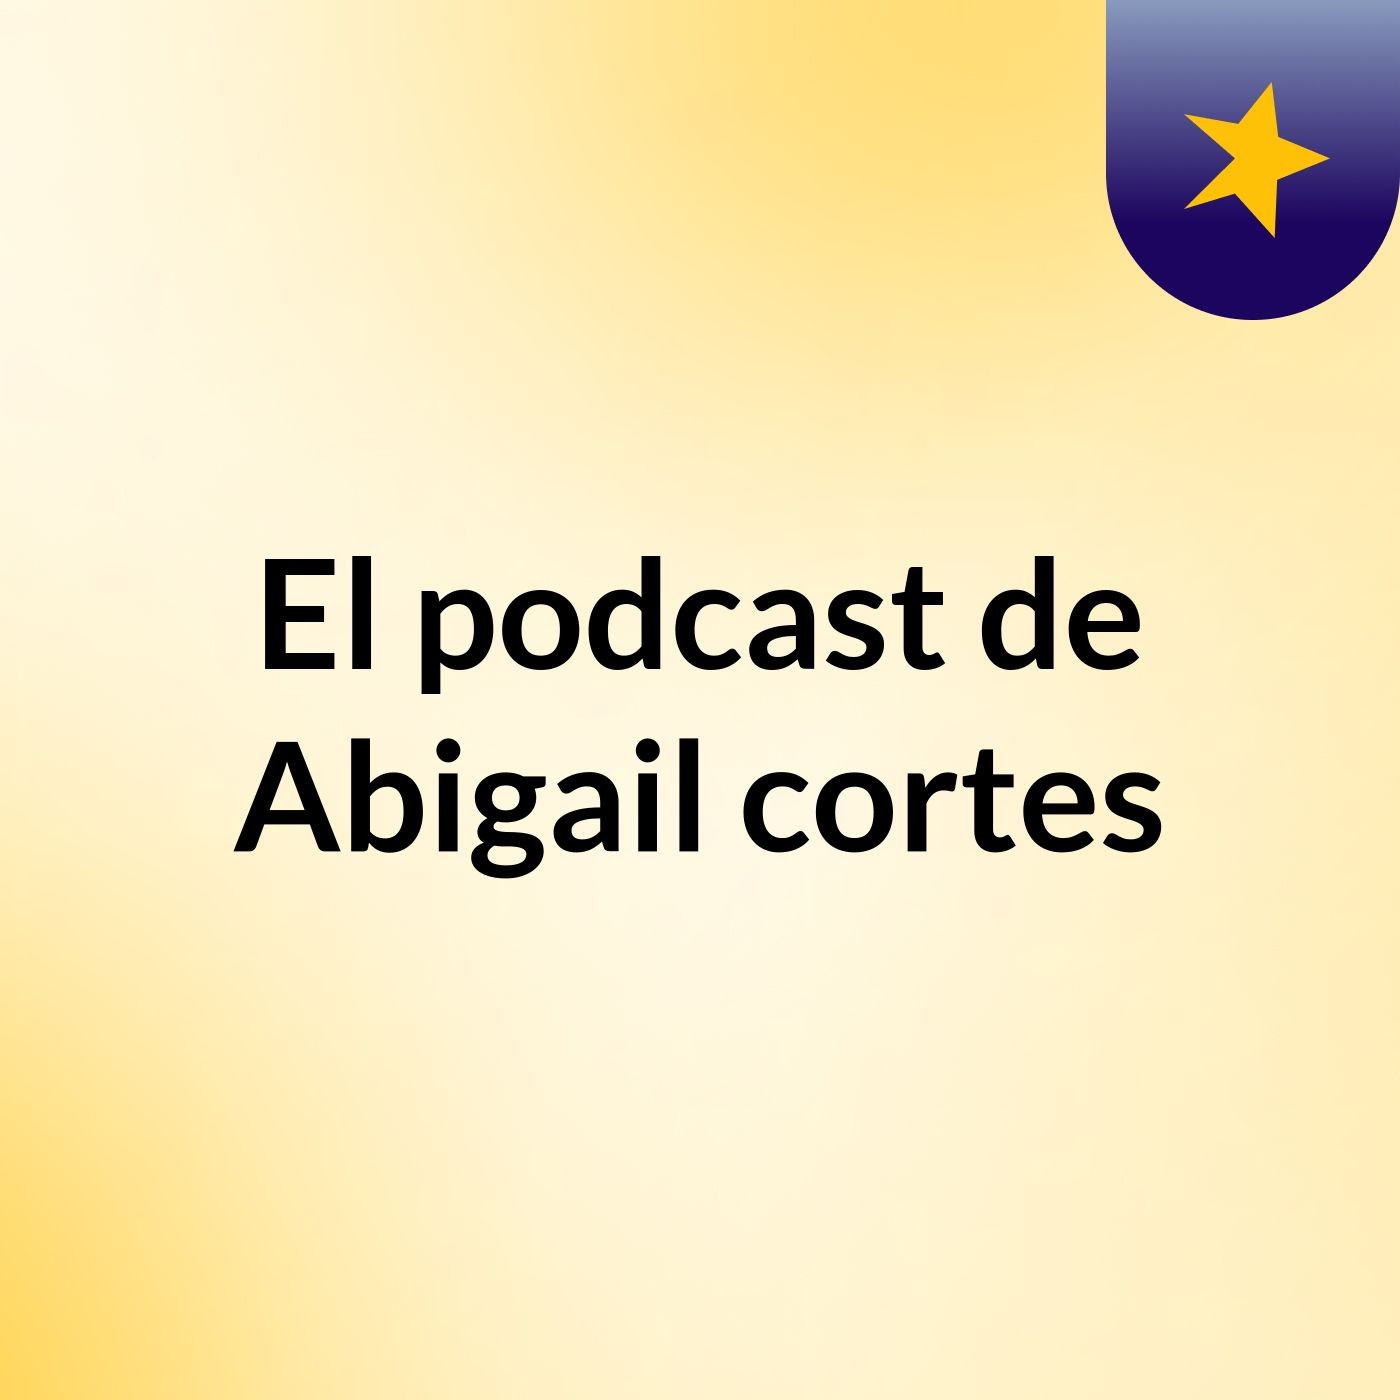 El podcast de Abigail cortes